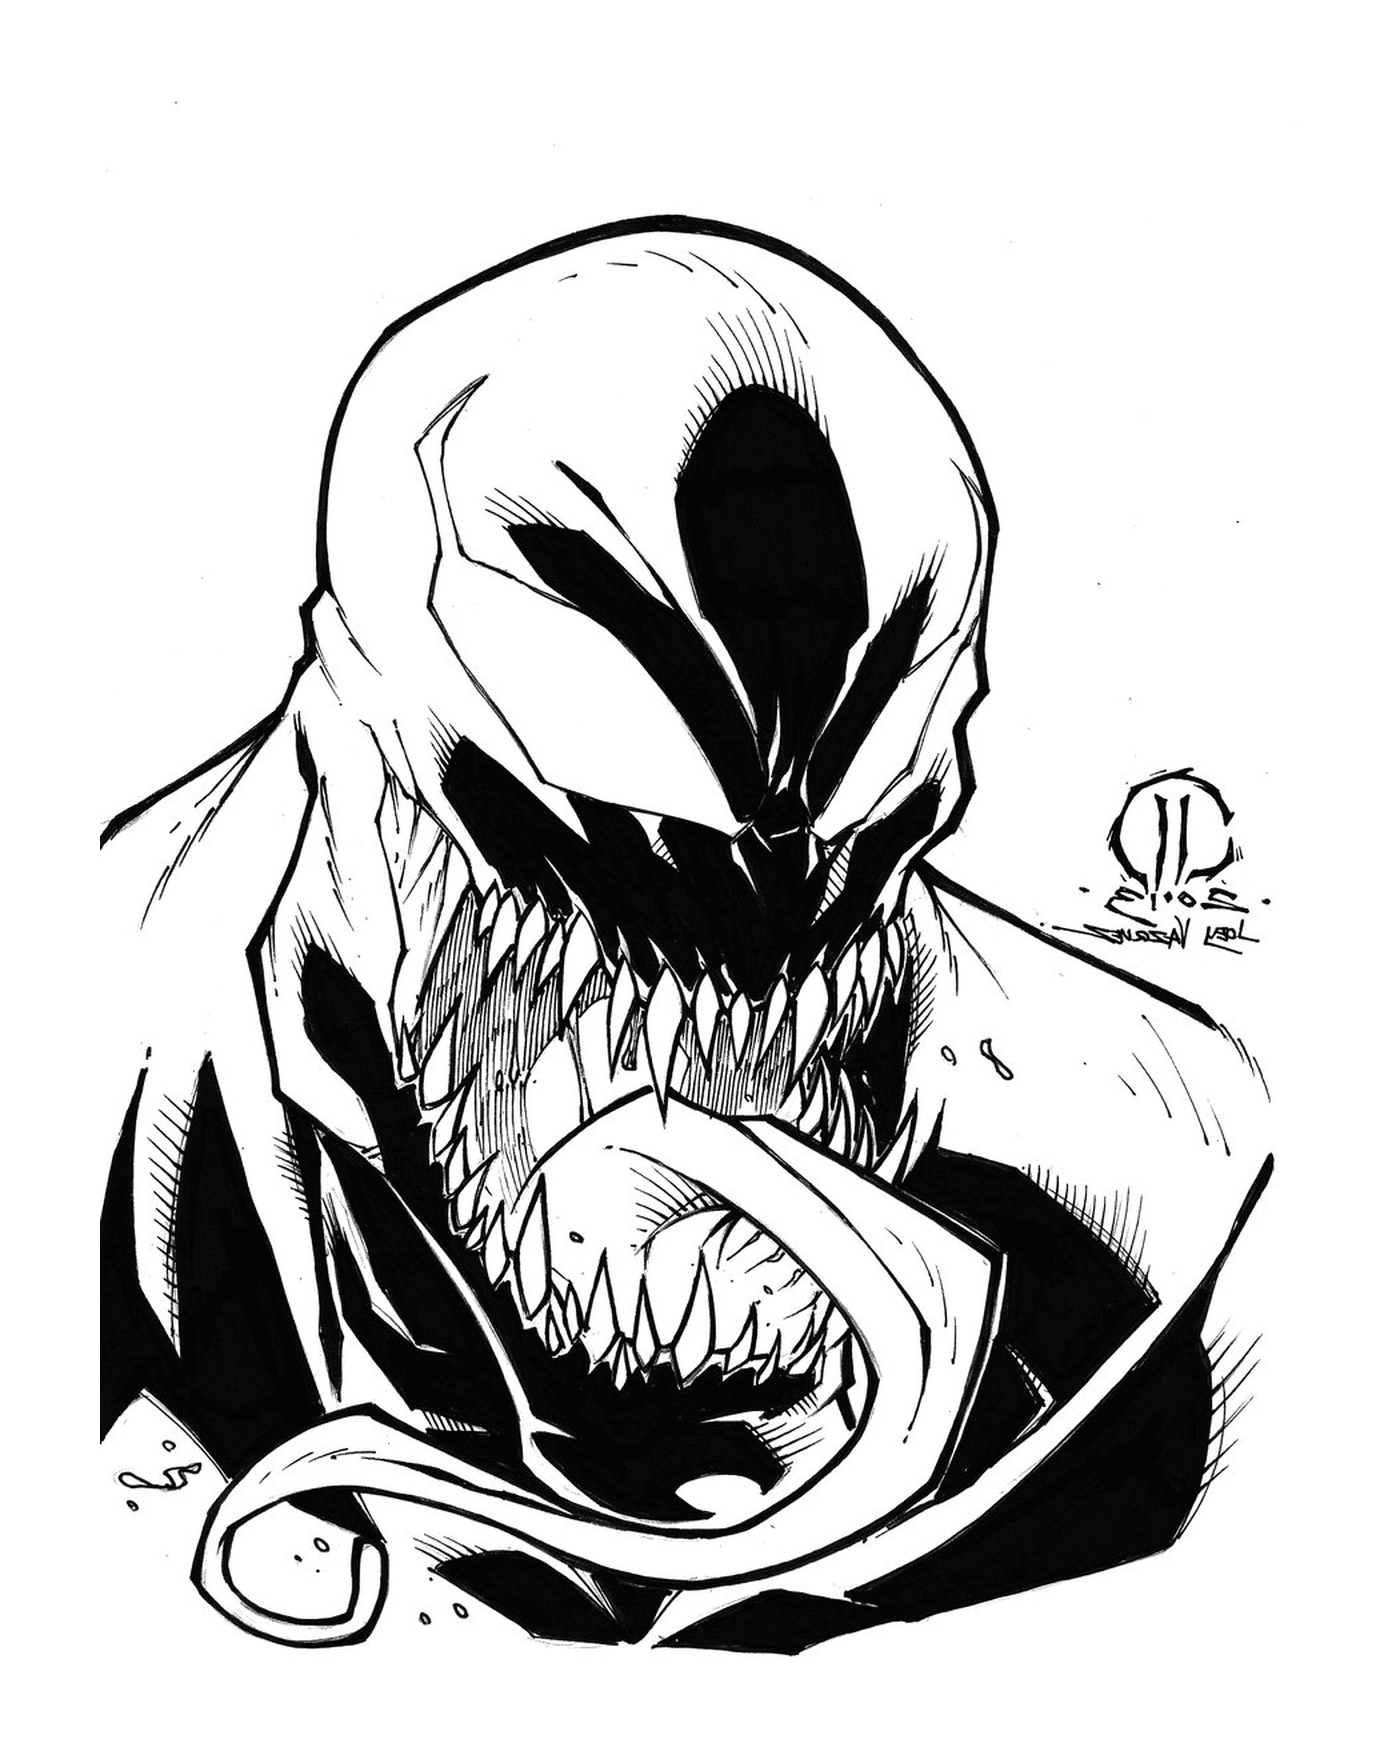  Skizzen Venom Marvel von Joeyvazquez 